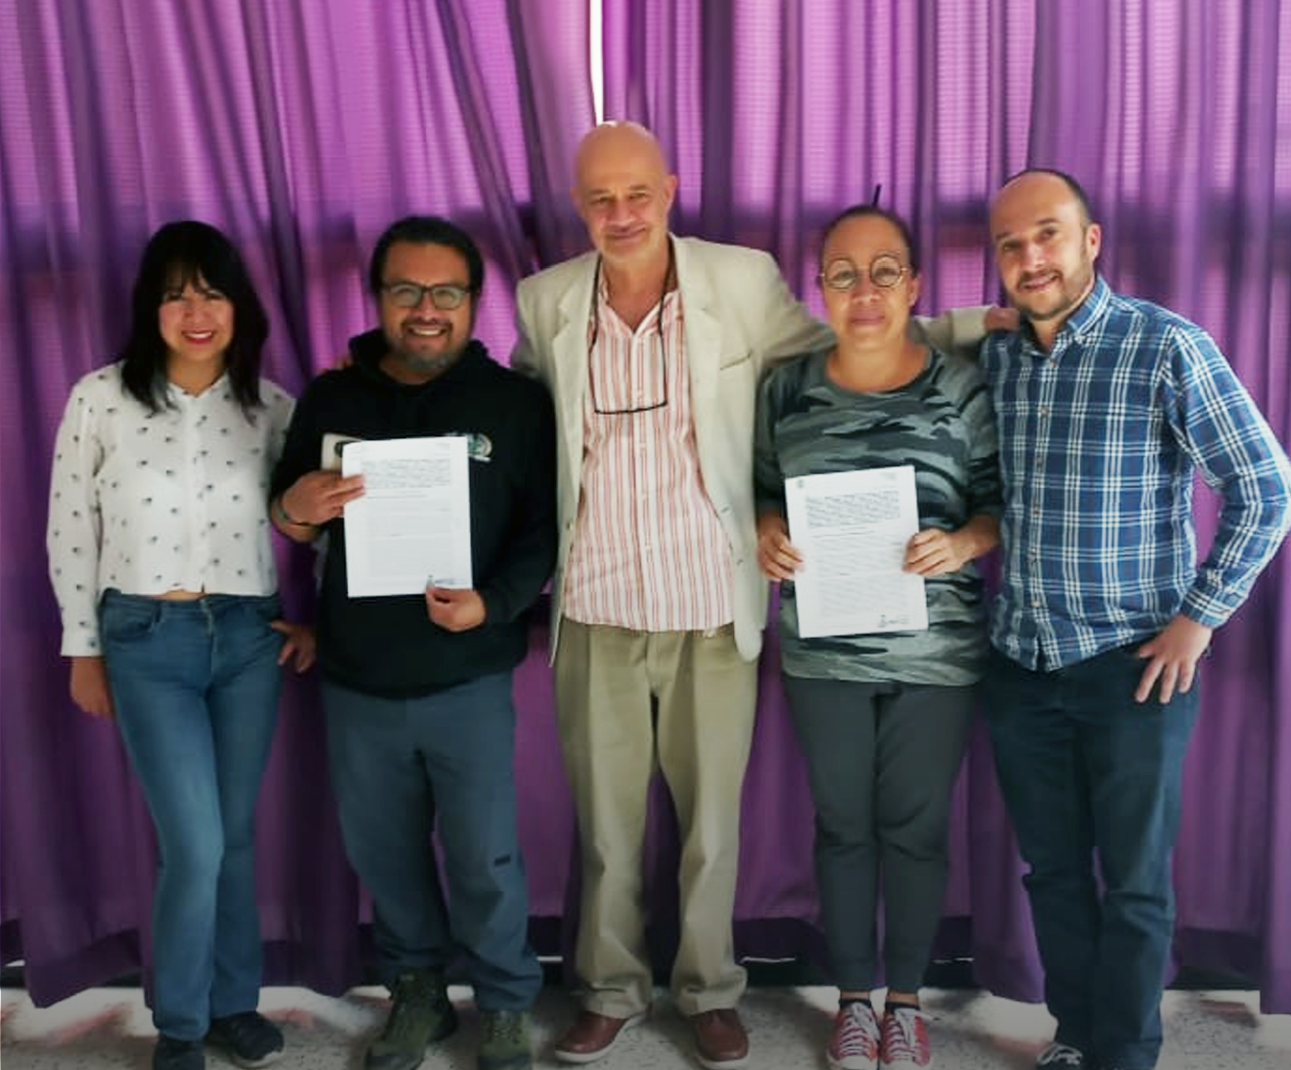 El SPR, a través de Altavoz Radio, firmó convenios de colaboración con la Red de Radios Comunitarias de México, A. C. y la asociación Salud Integral para la Mujer, A. C.